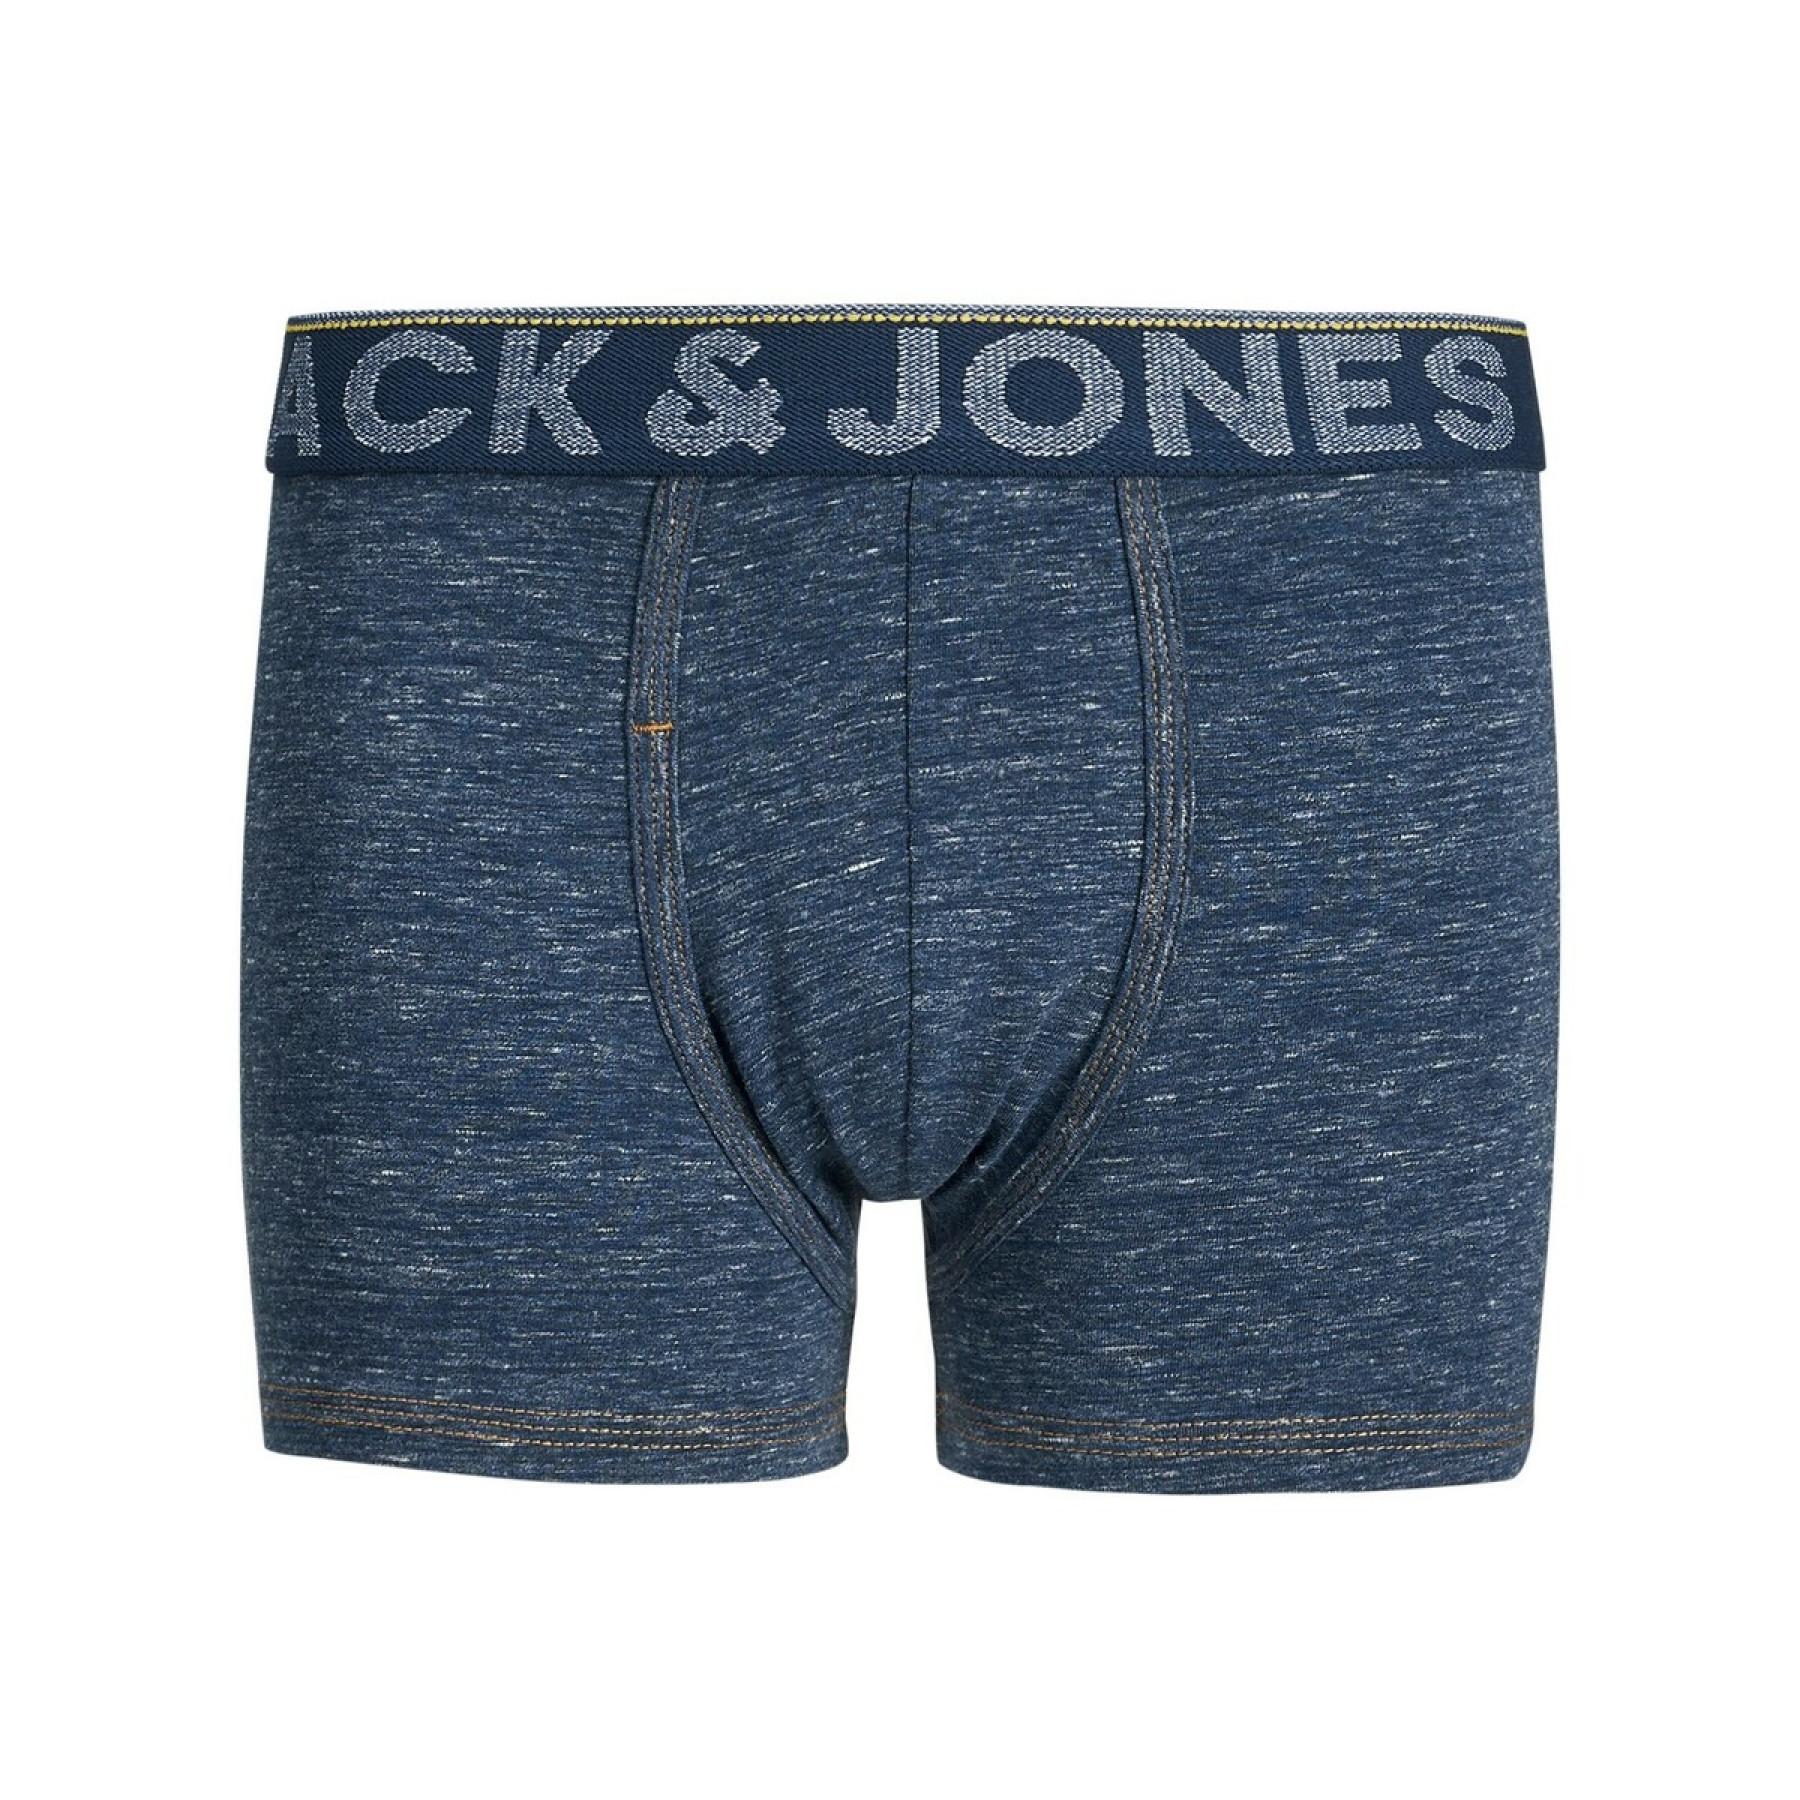 Set van 3 boxershorts voor kinderen Jack & Jones Jacdenim